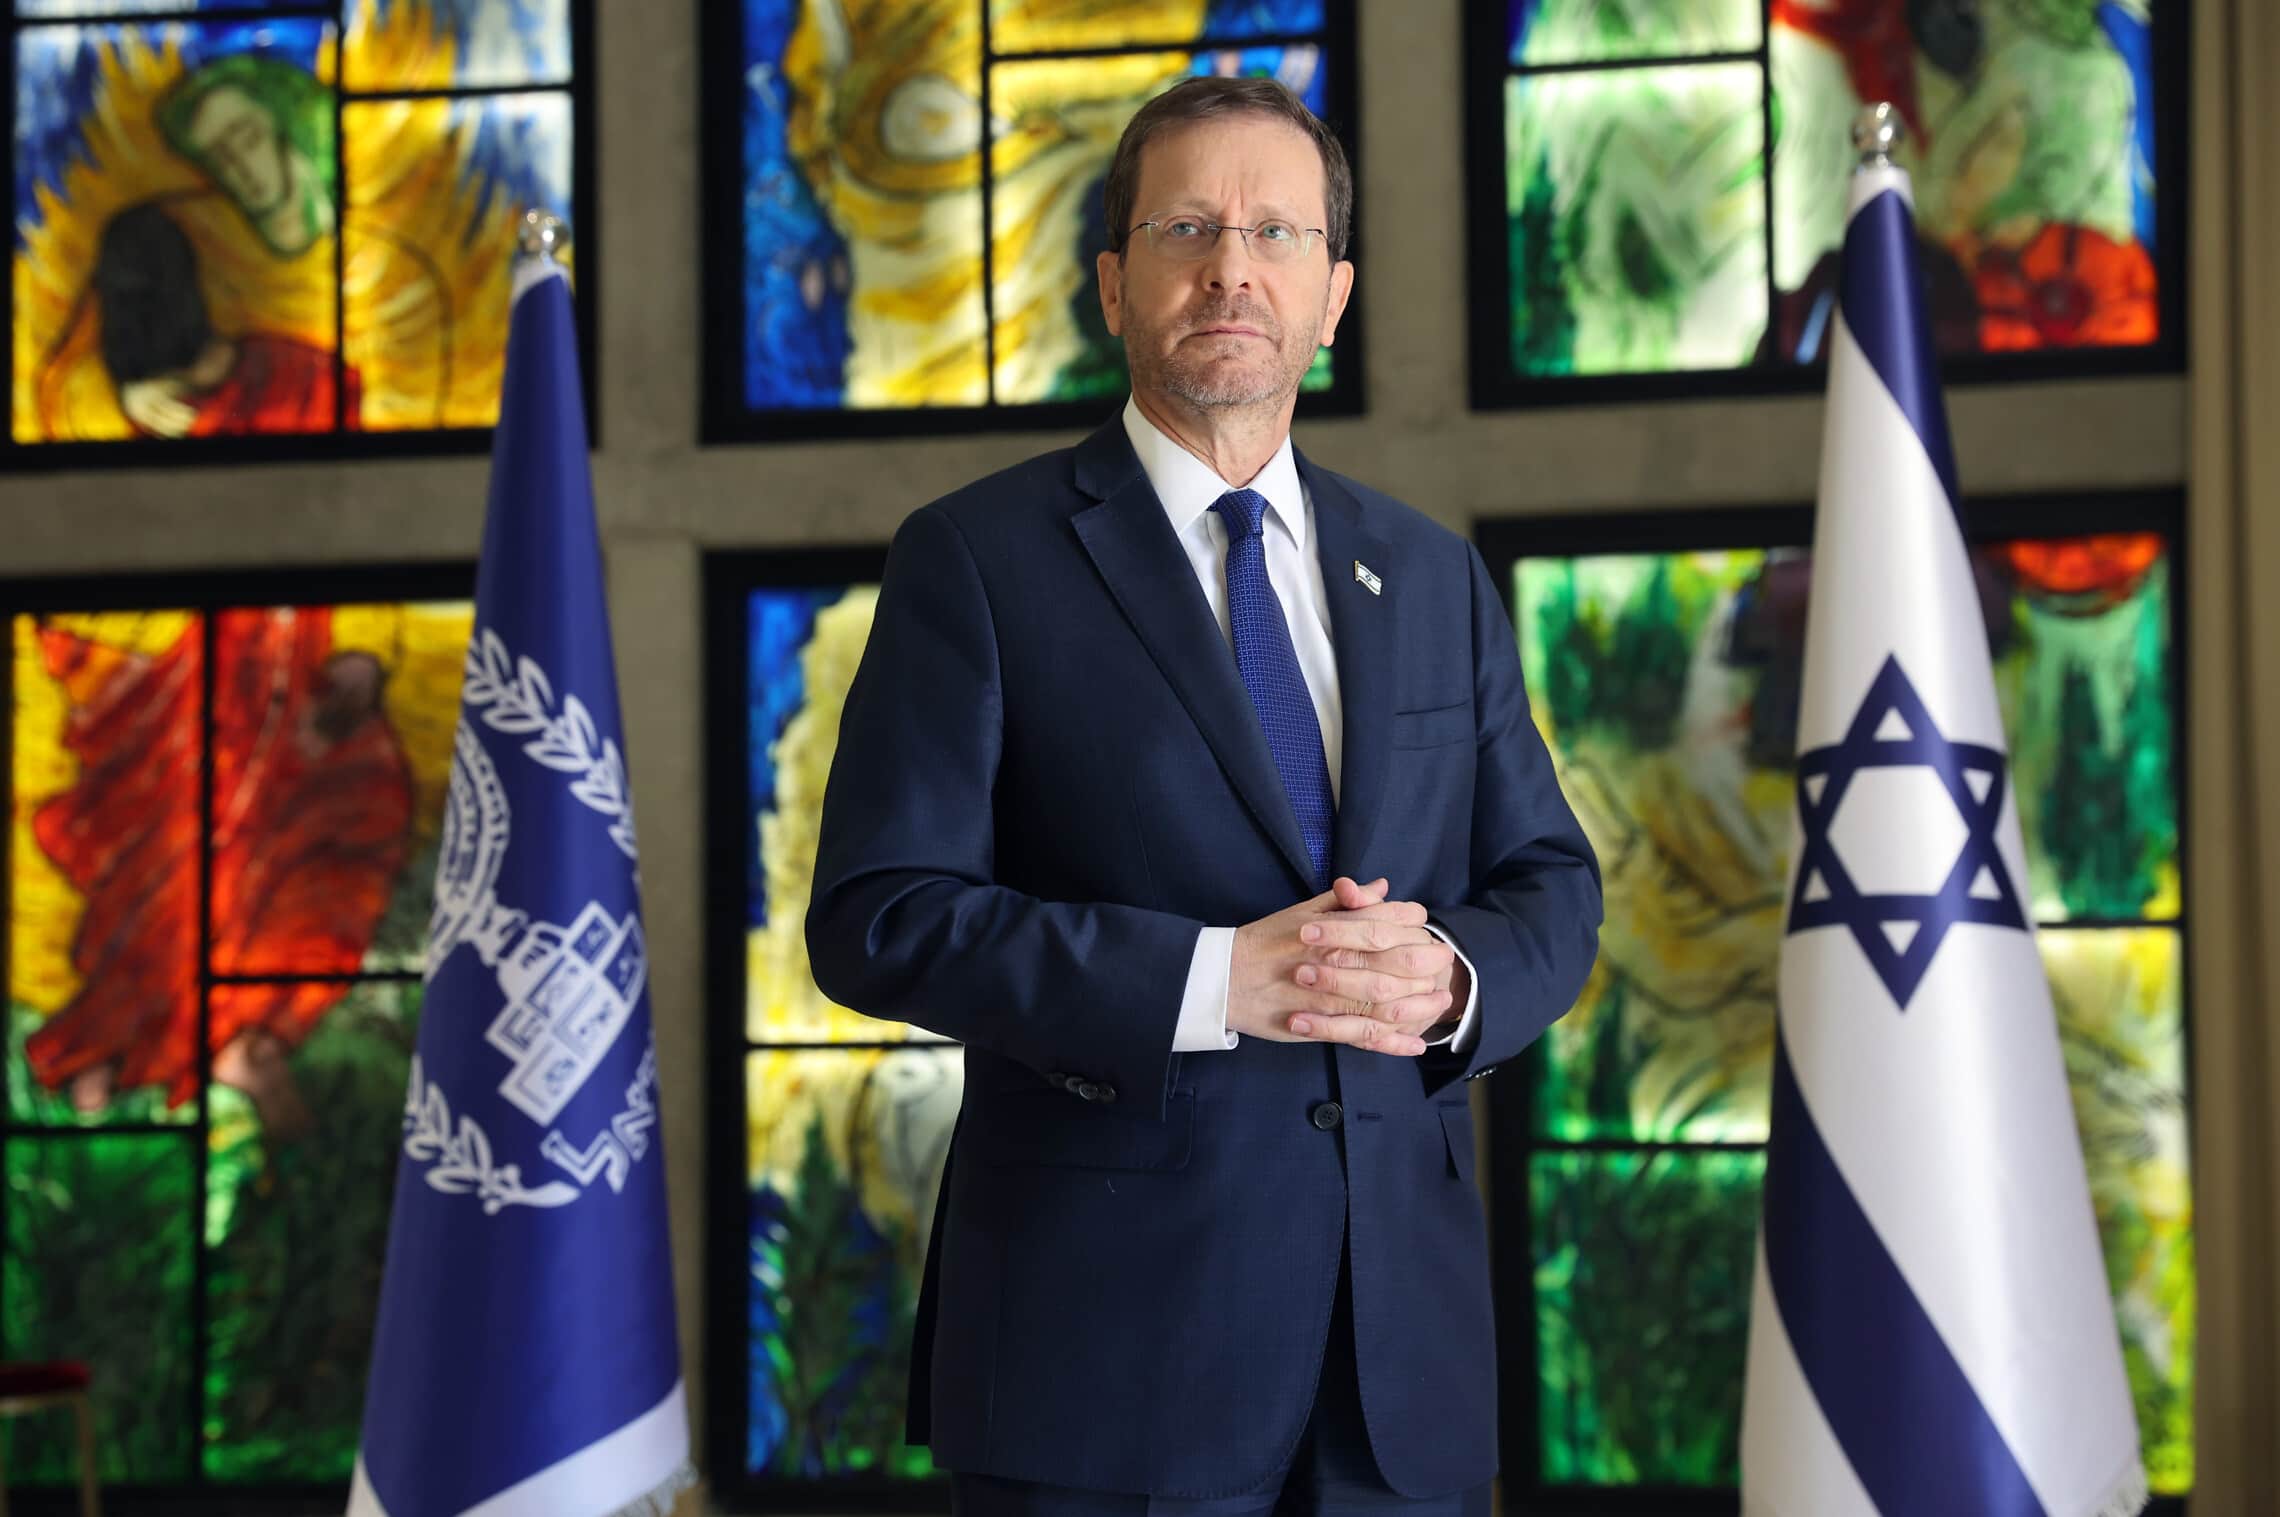 נשיא המדינה יצחק הרצוג בבית הנשיא,14 באפריל 2022 (צילום: אריאל ירוזולימסקי עבור זמן ישראל)